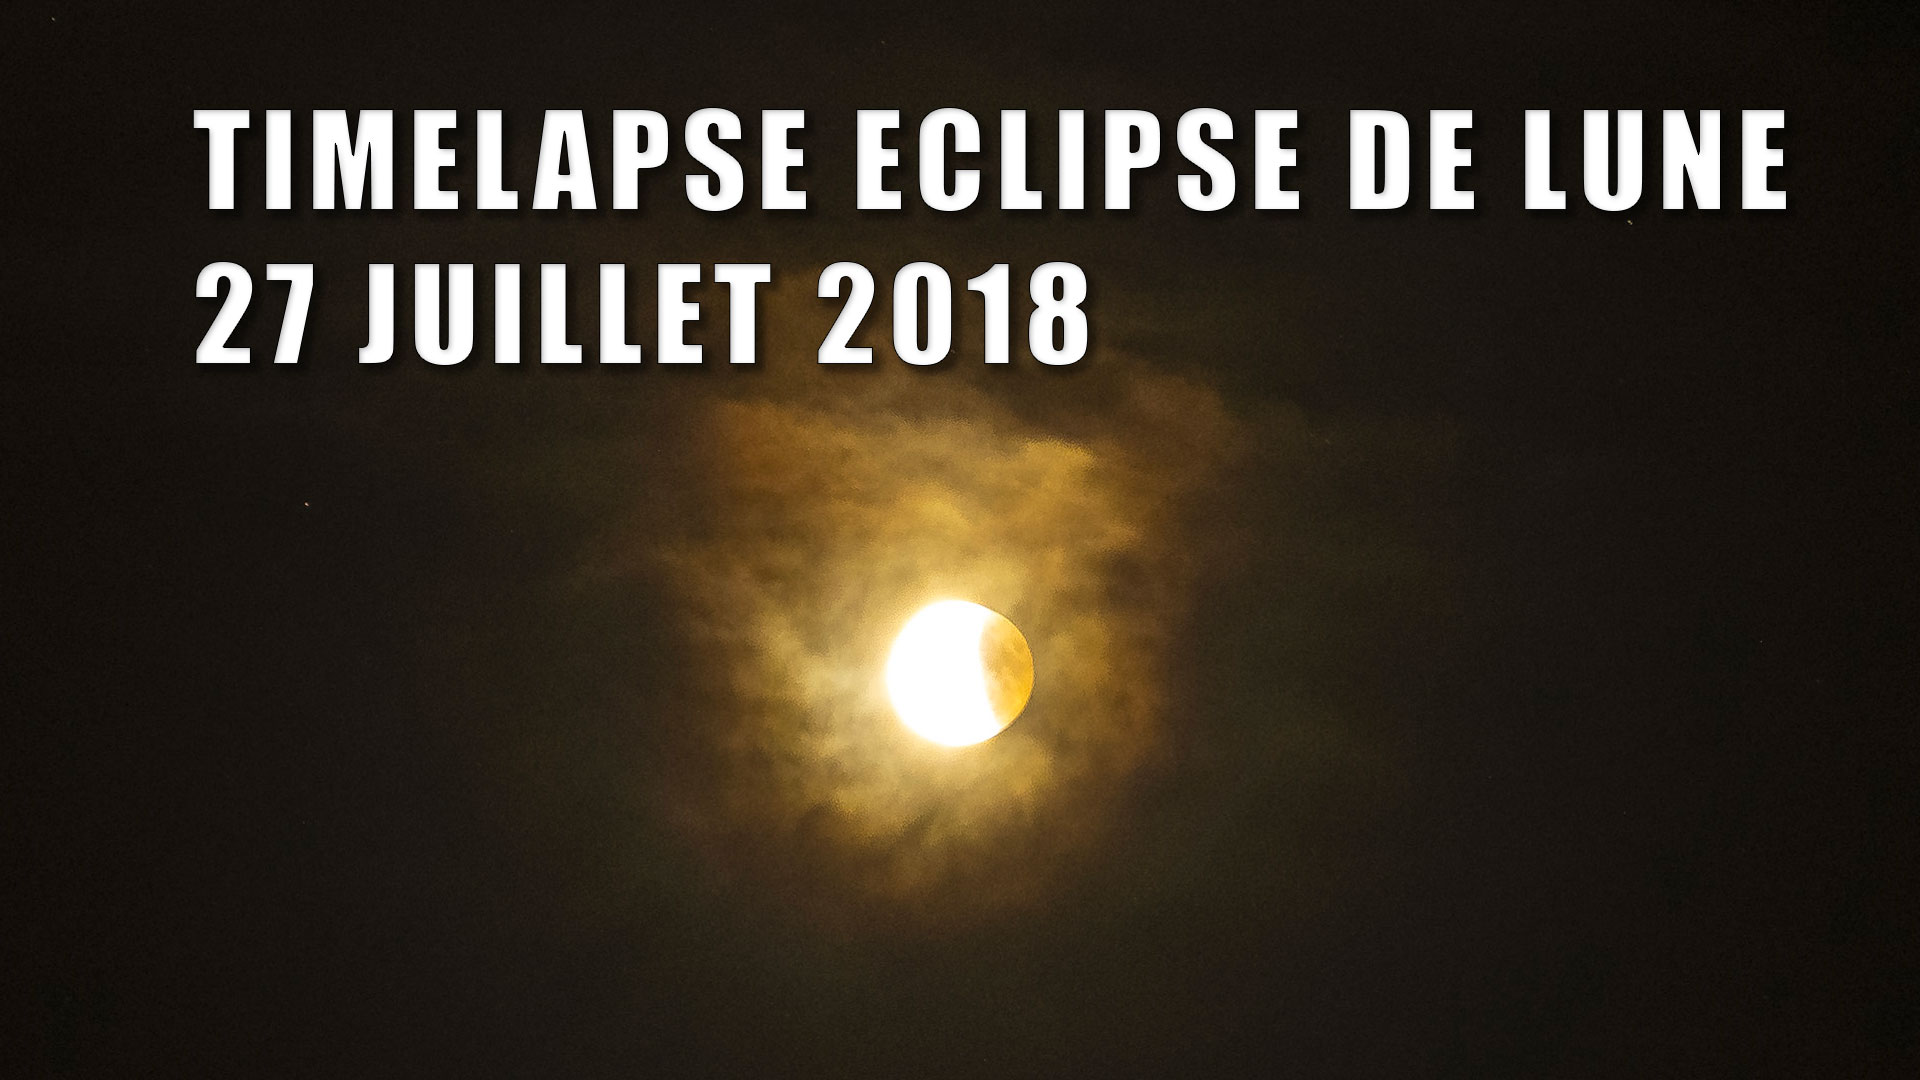 Timelapse Eclipse de lune du 27 juillet 2018